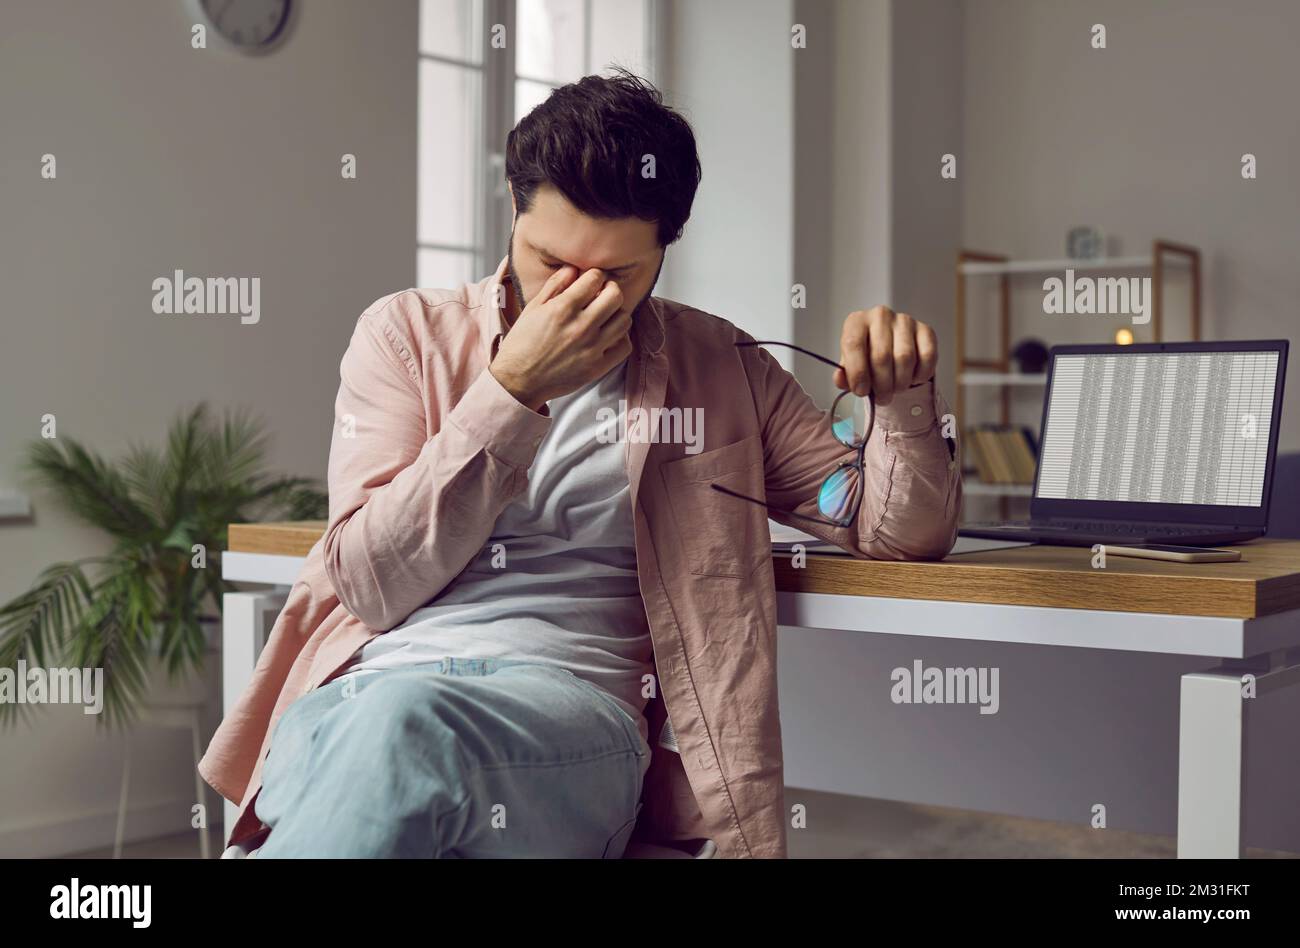 Homme fatigué, stressé, avec fatigue oculaire assis au bureau avec ordinateur portable Banque D'Images